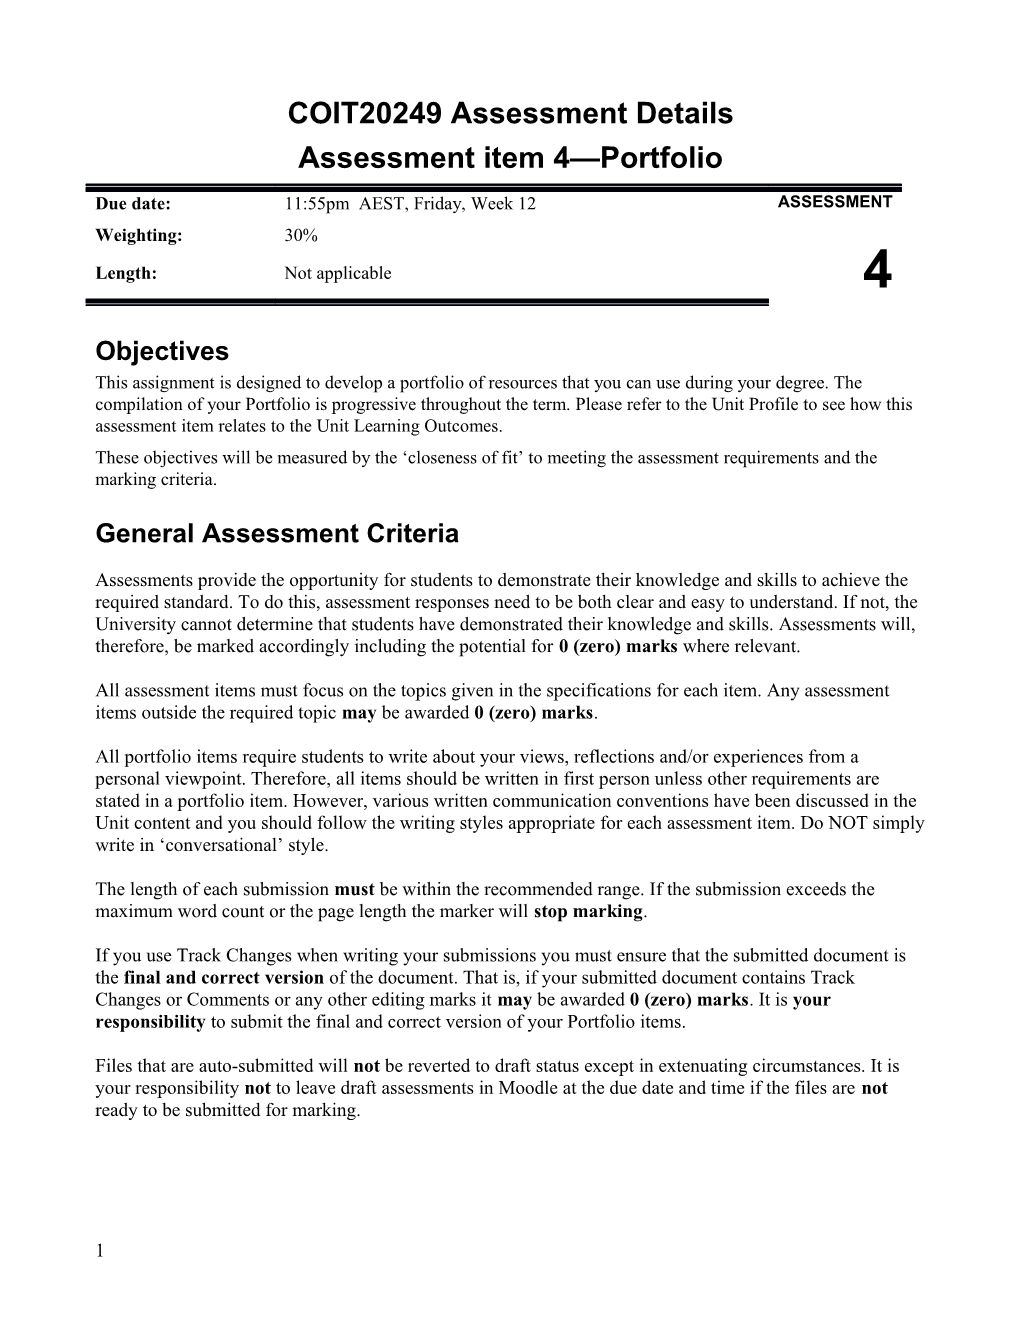 Assessment Item 4 Portfolio